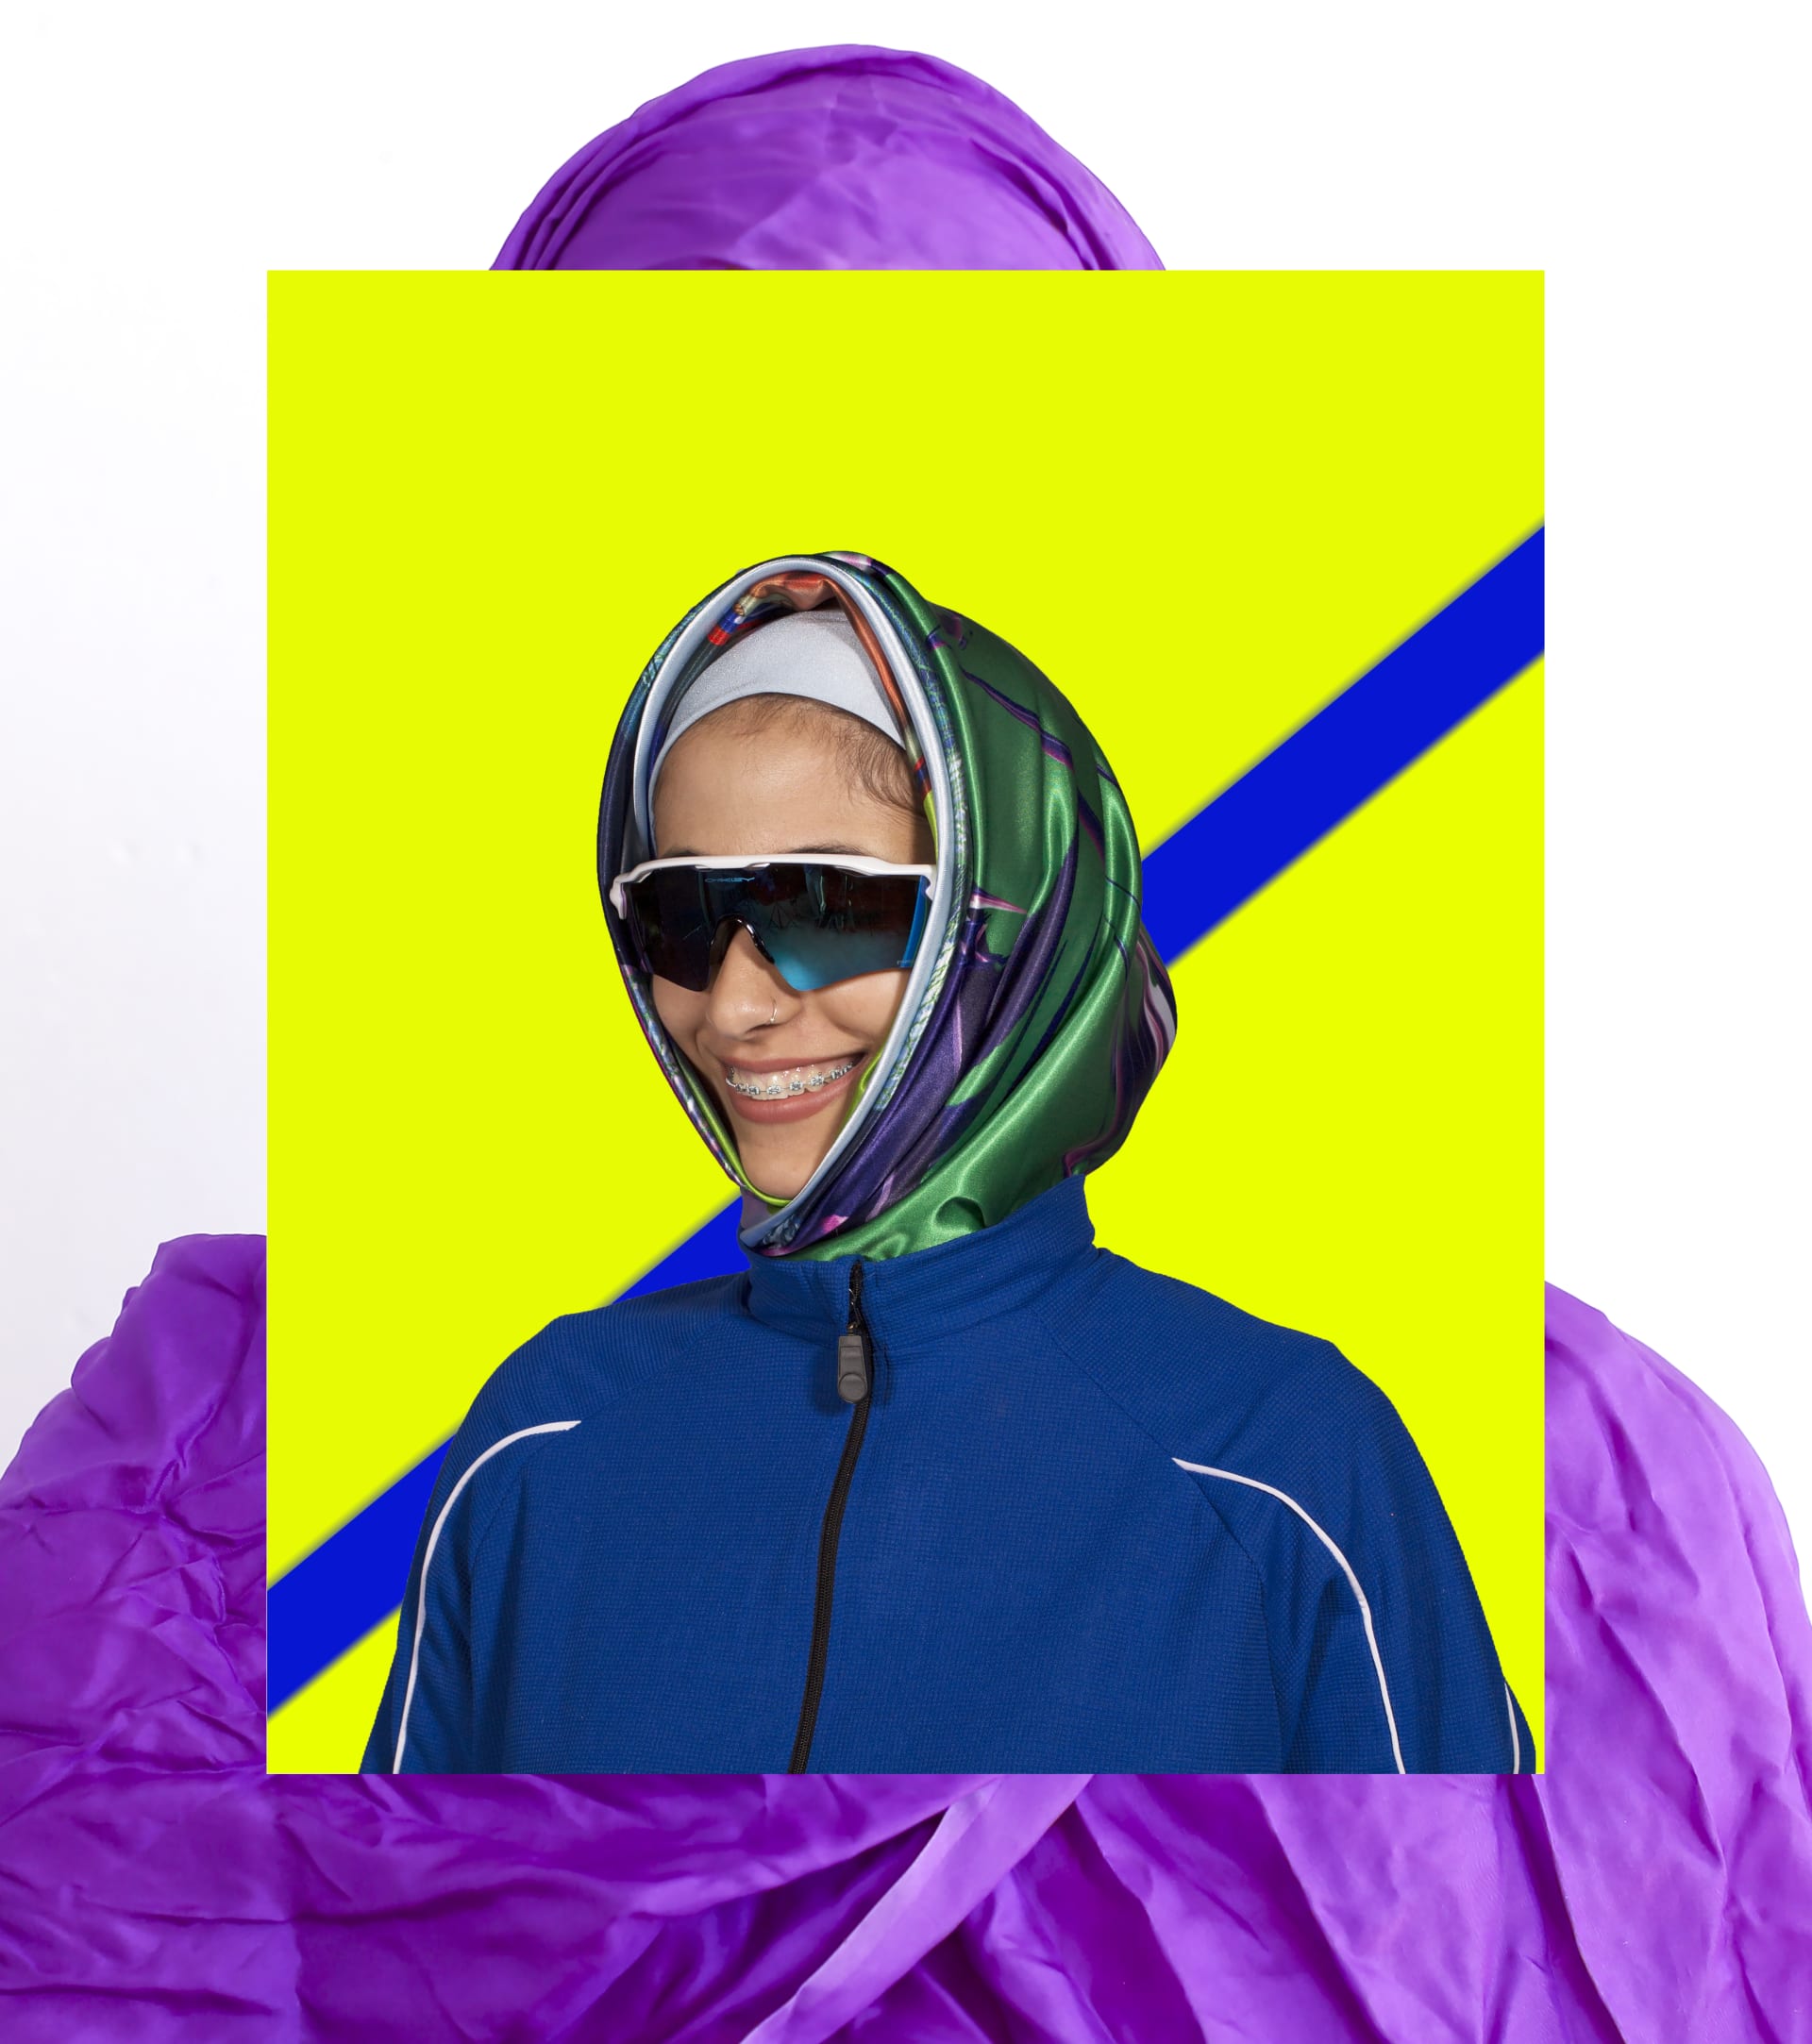 بتصاميم "جريئة".. فنانة تعطي لمحة عن "حجاب المستقبل"